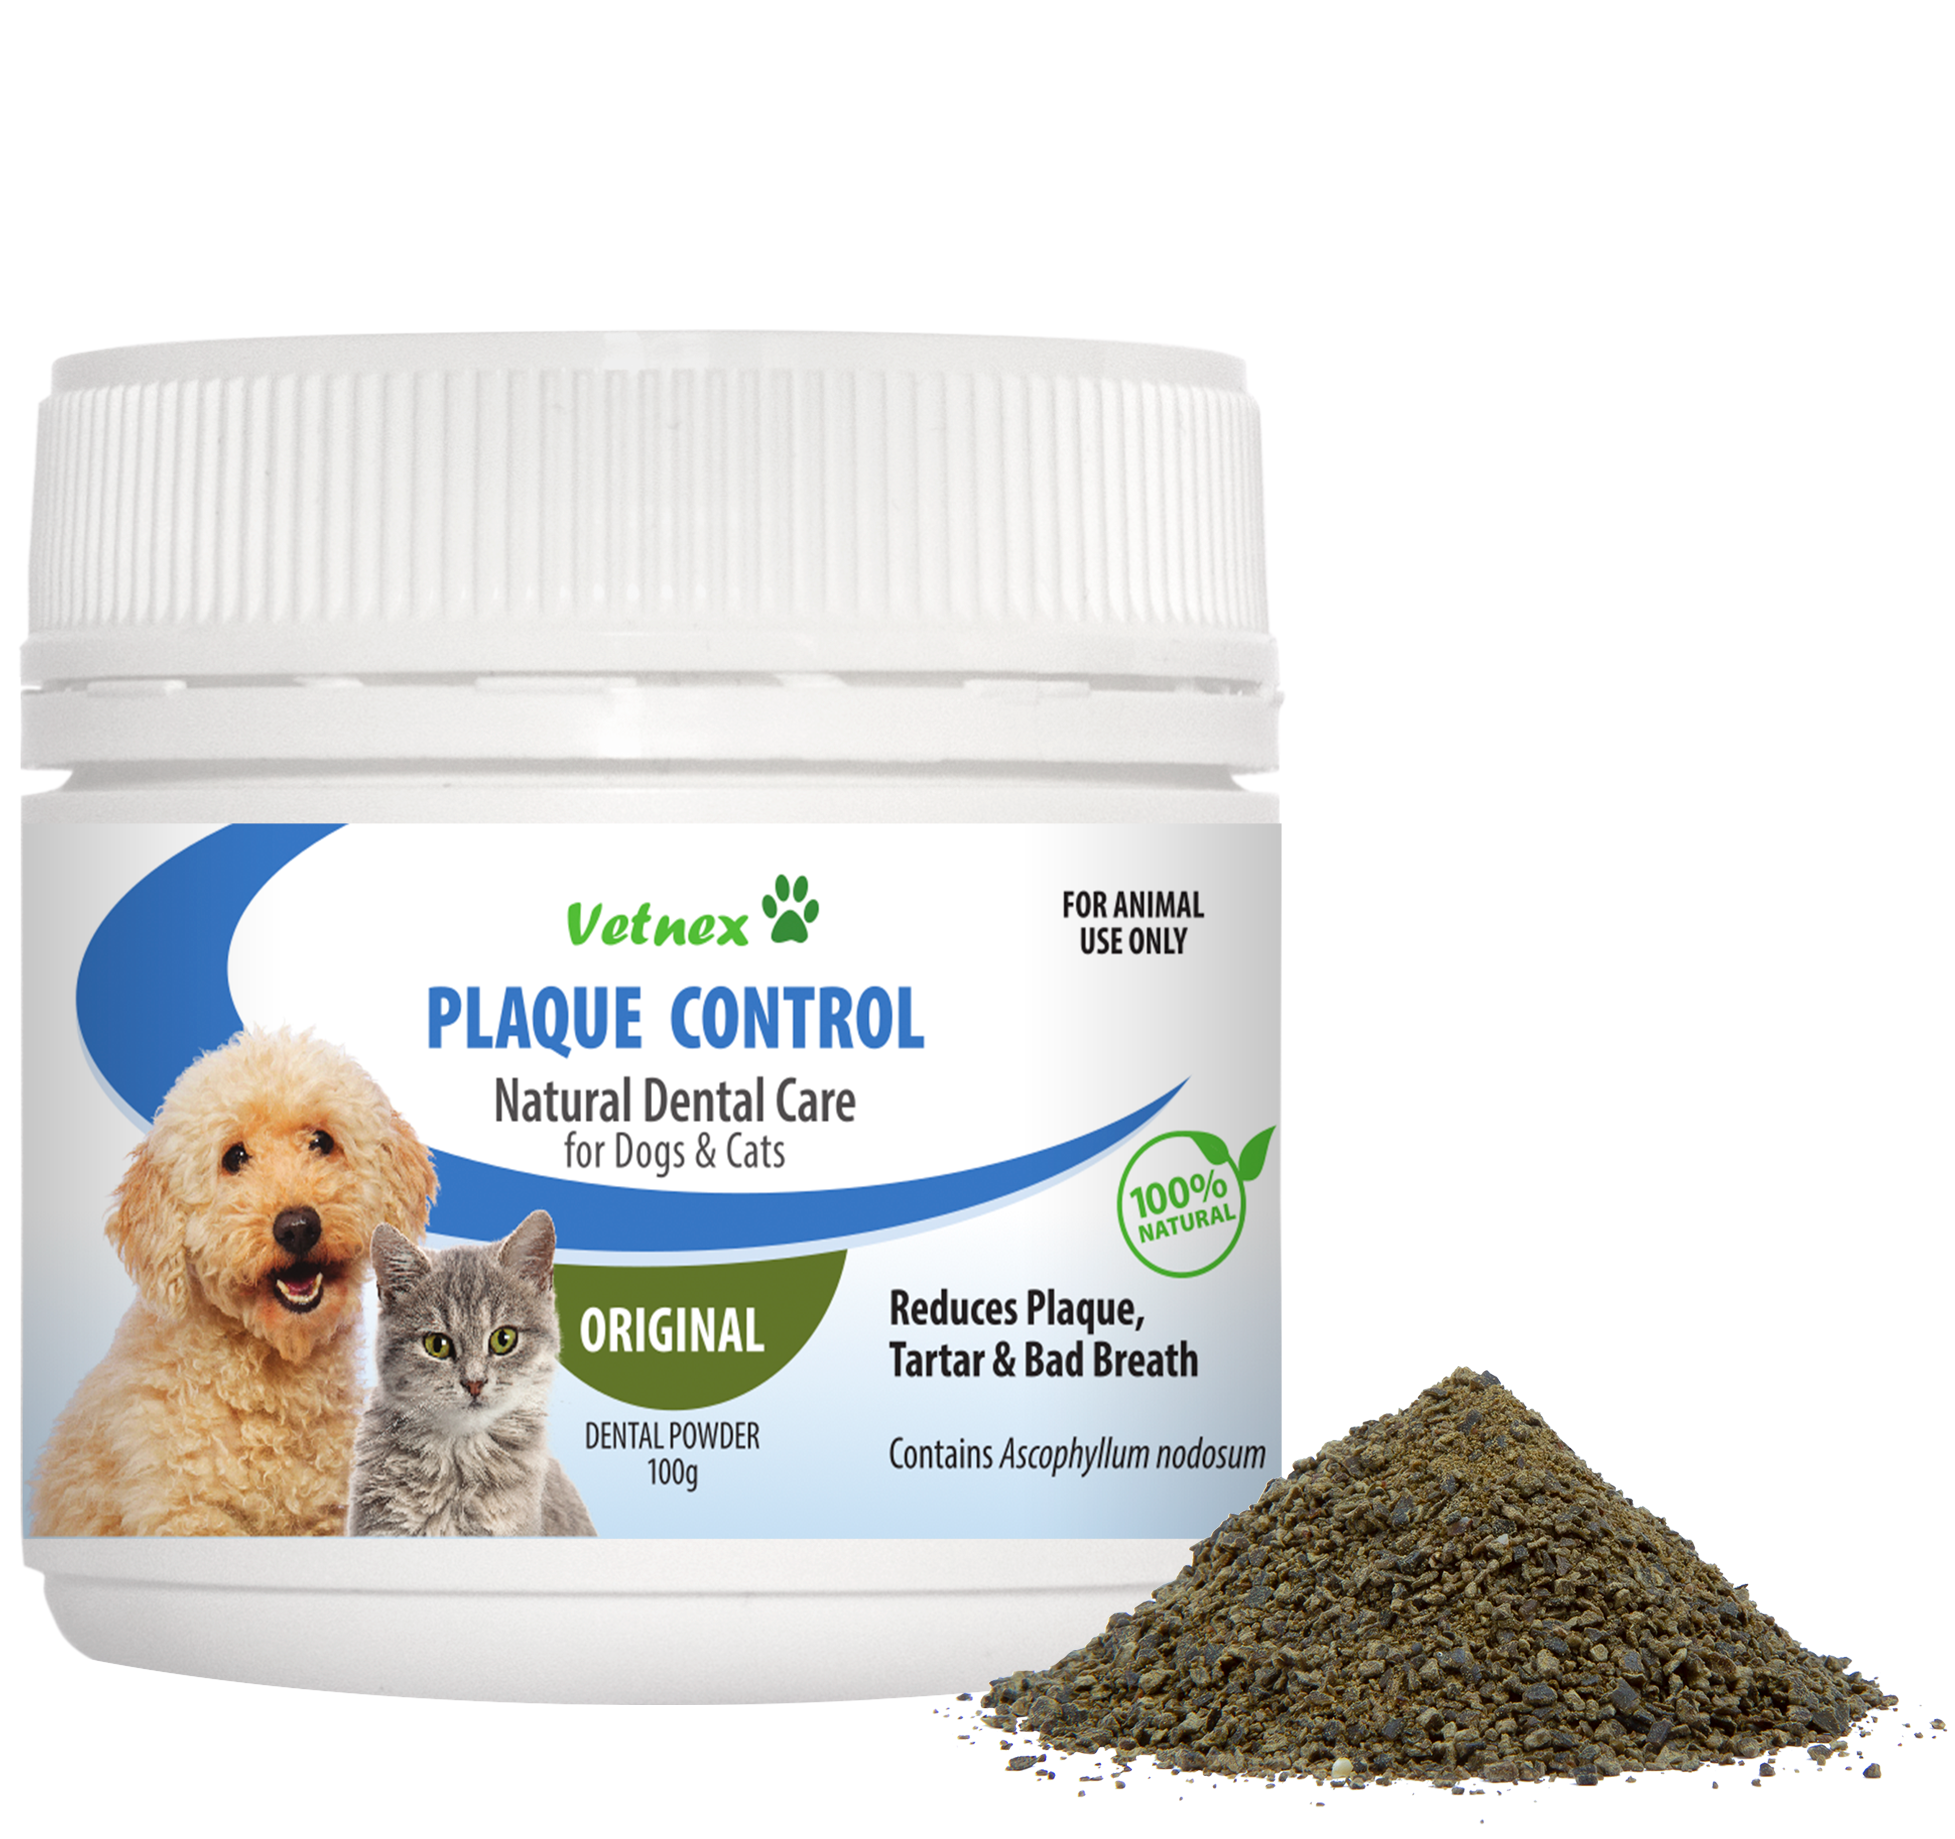 Vetnex Plaque Control Dental Powder (Original) for Dogs & Cats 100g